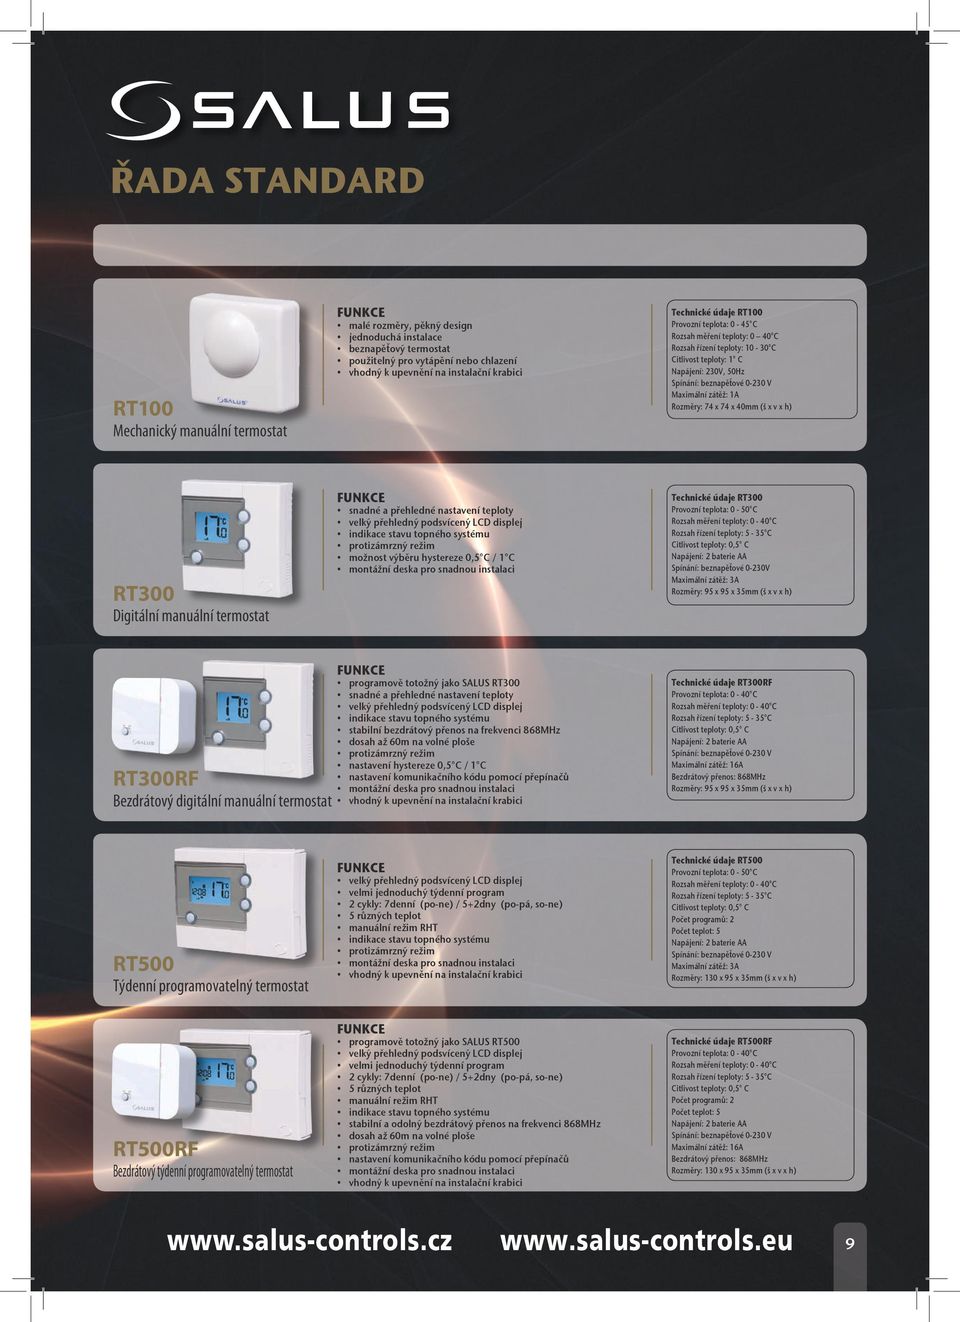 x v x h) RT300 Digitální manuální termostat snadné a přehledné nastavení teploty velký přehledný podsvícený LCD displej indikace stavu topného systému protizámrzný režim možnost výběru hystereze 0,5